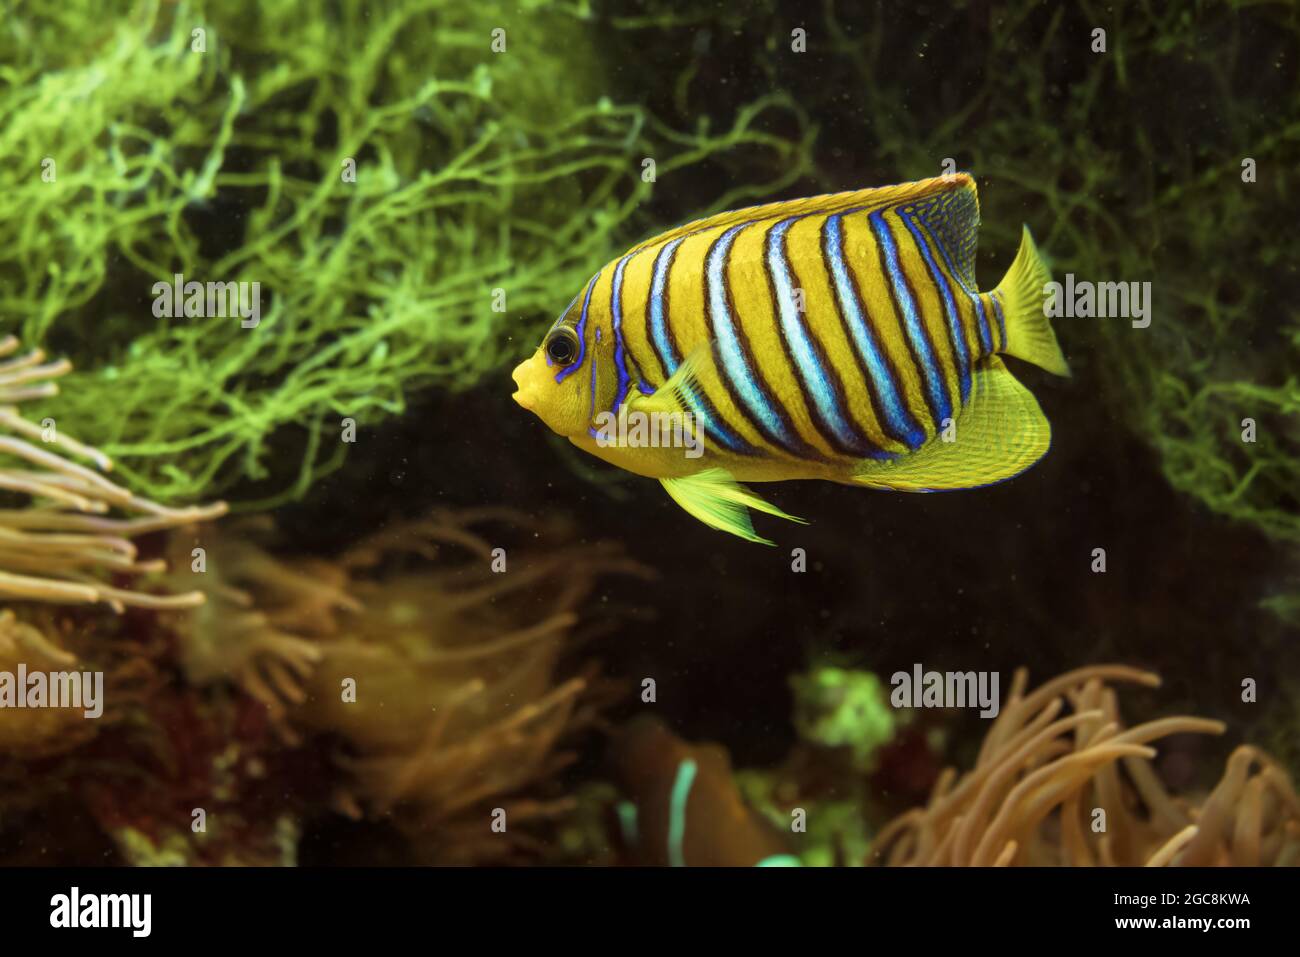 Vue sous-marine de la piscine lumineuse Regal angelfish ou Pygoplites diacanthus Banque D'Images